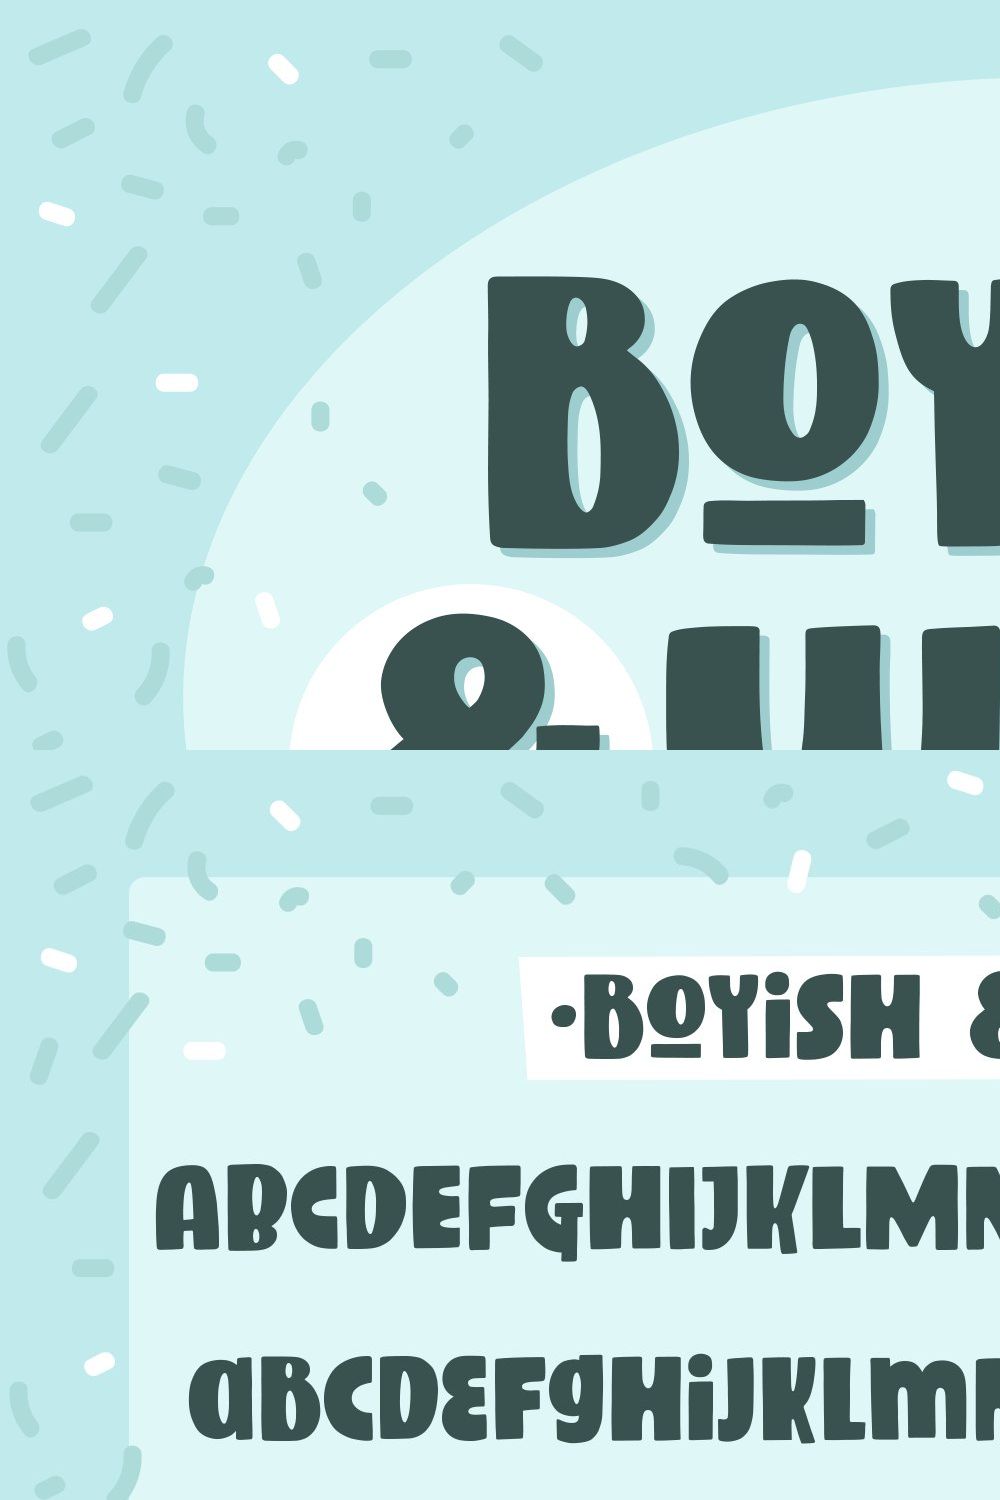 Boyish & Weird, a strange font pinterest preview image.